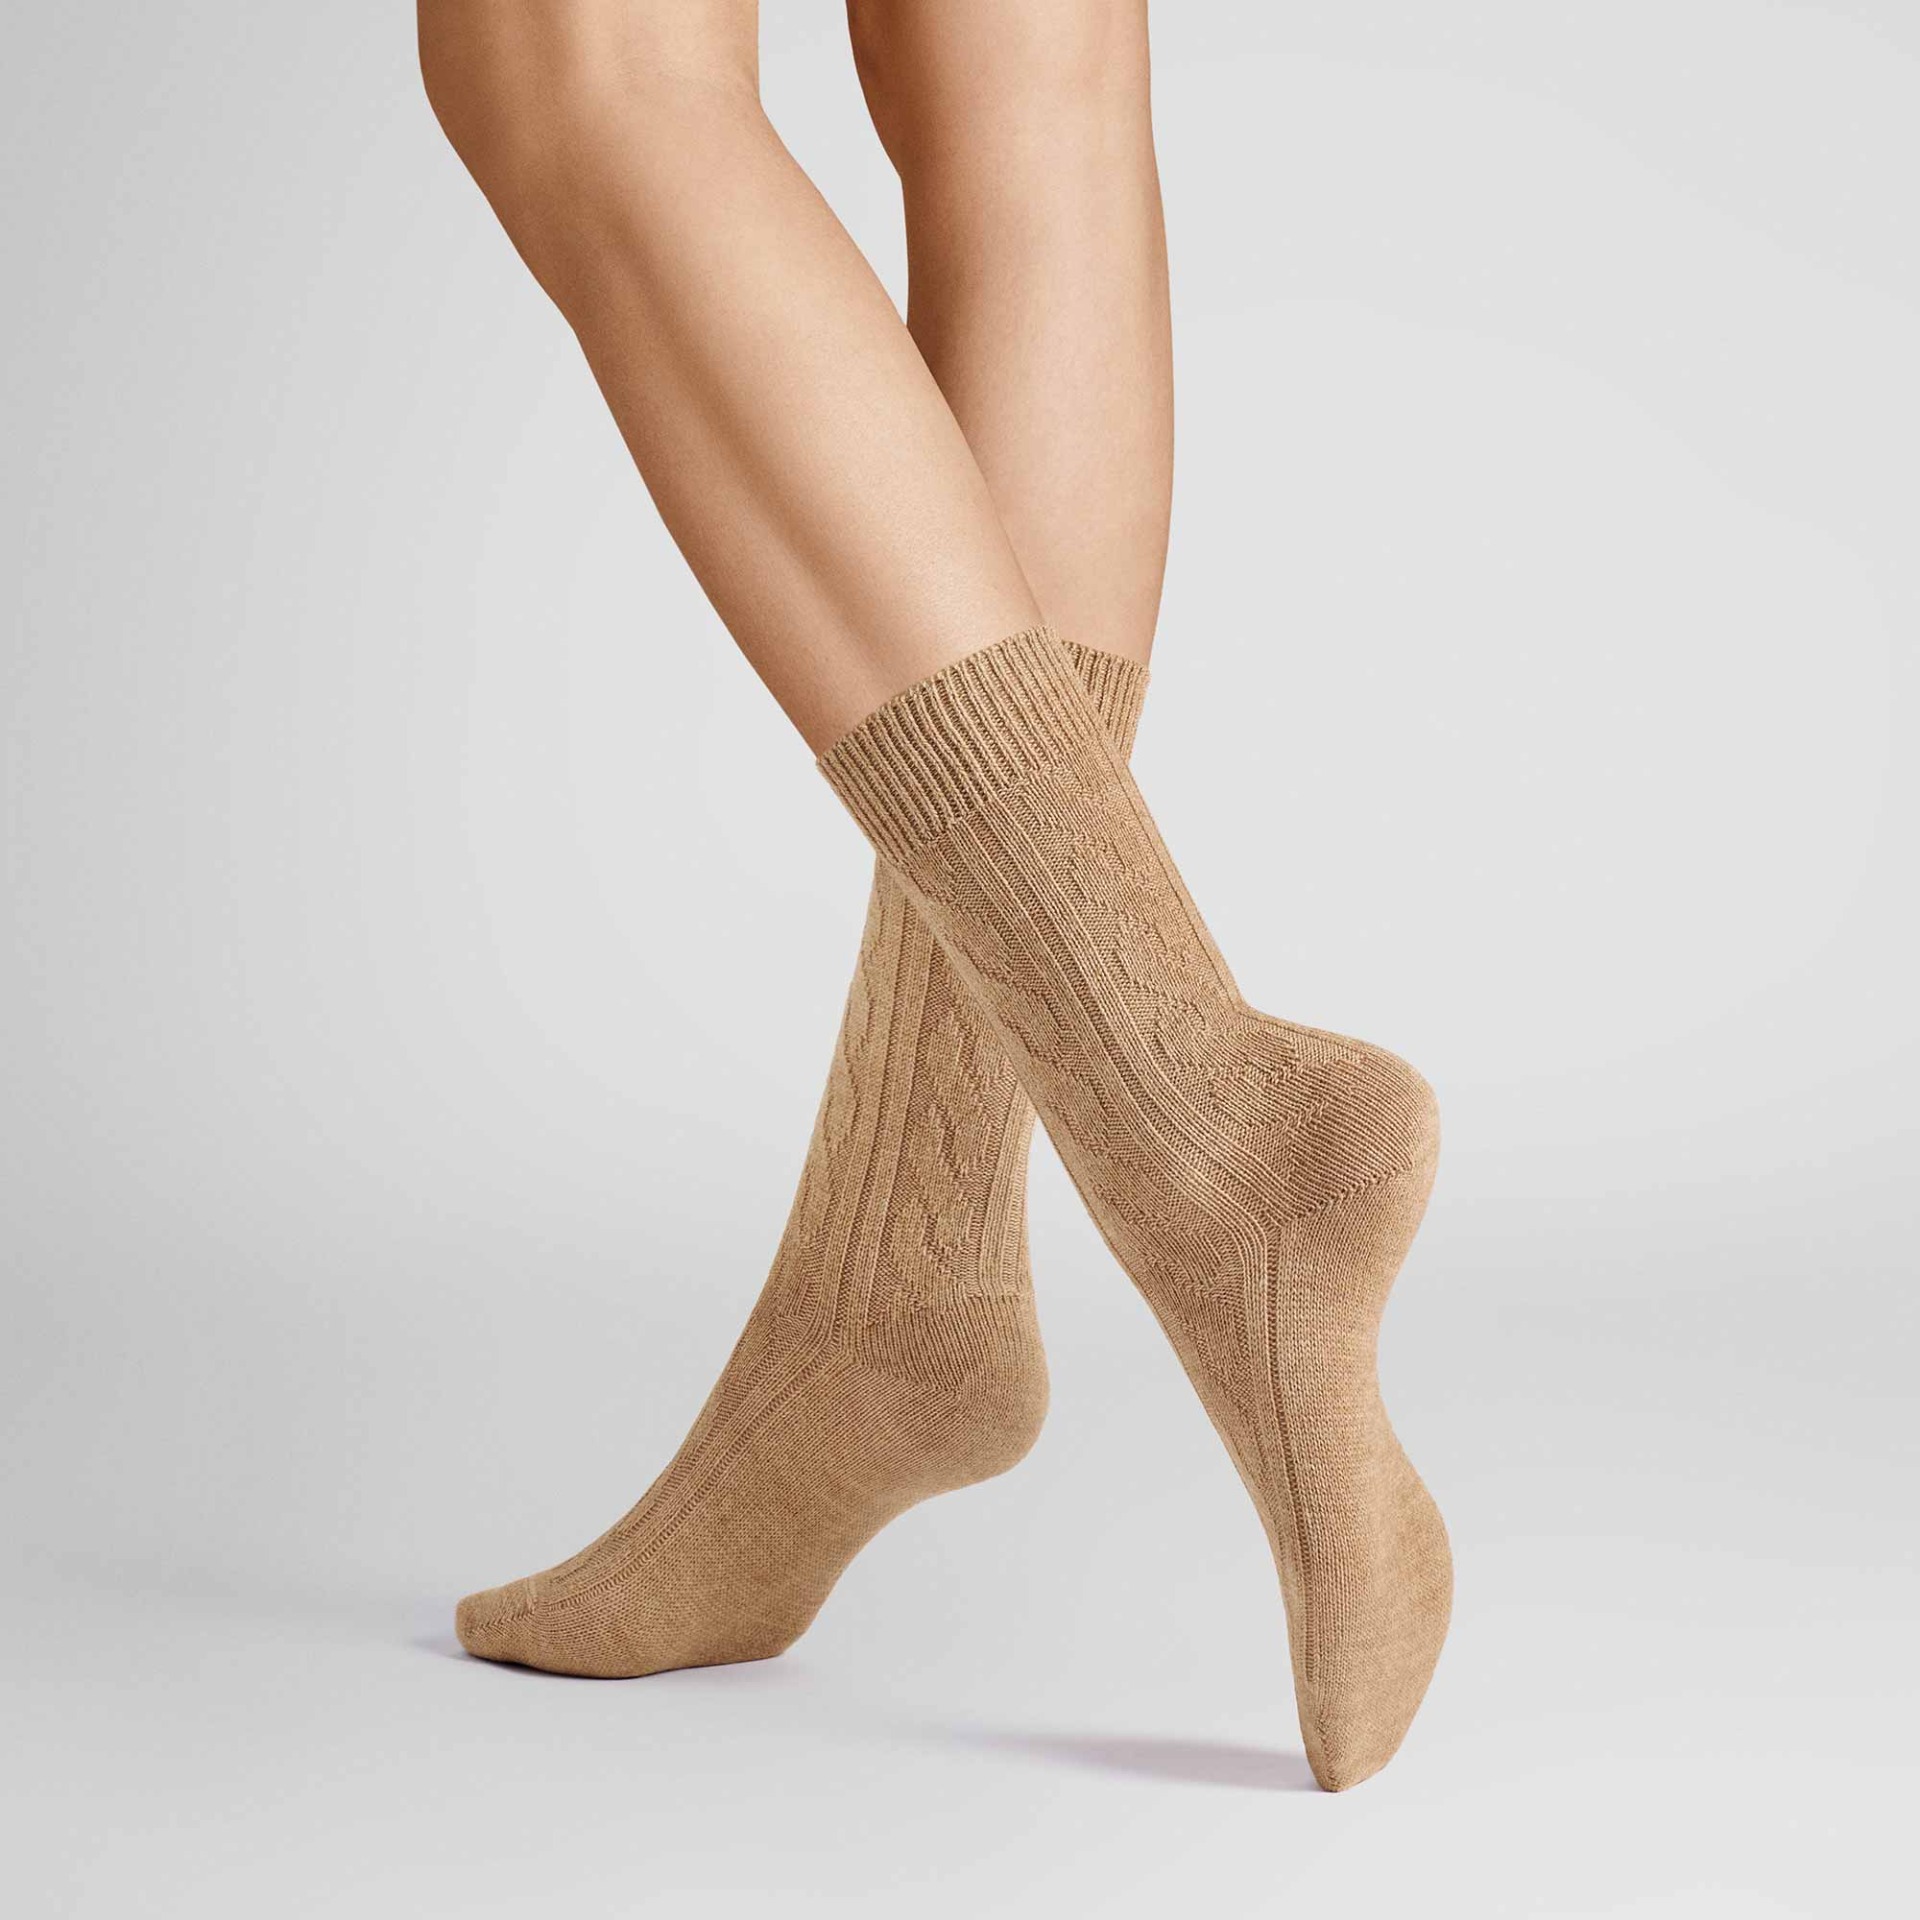 HUDSON Damen WINTER PLAIT -  35/38 - Wärmende Socken mit Zopf-Muster - Beigemel. 0723 (Dunkel Beige)